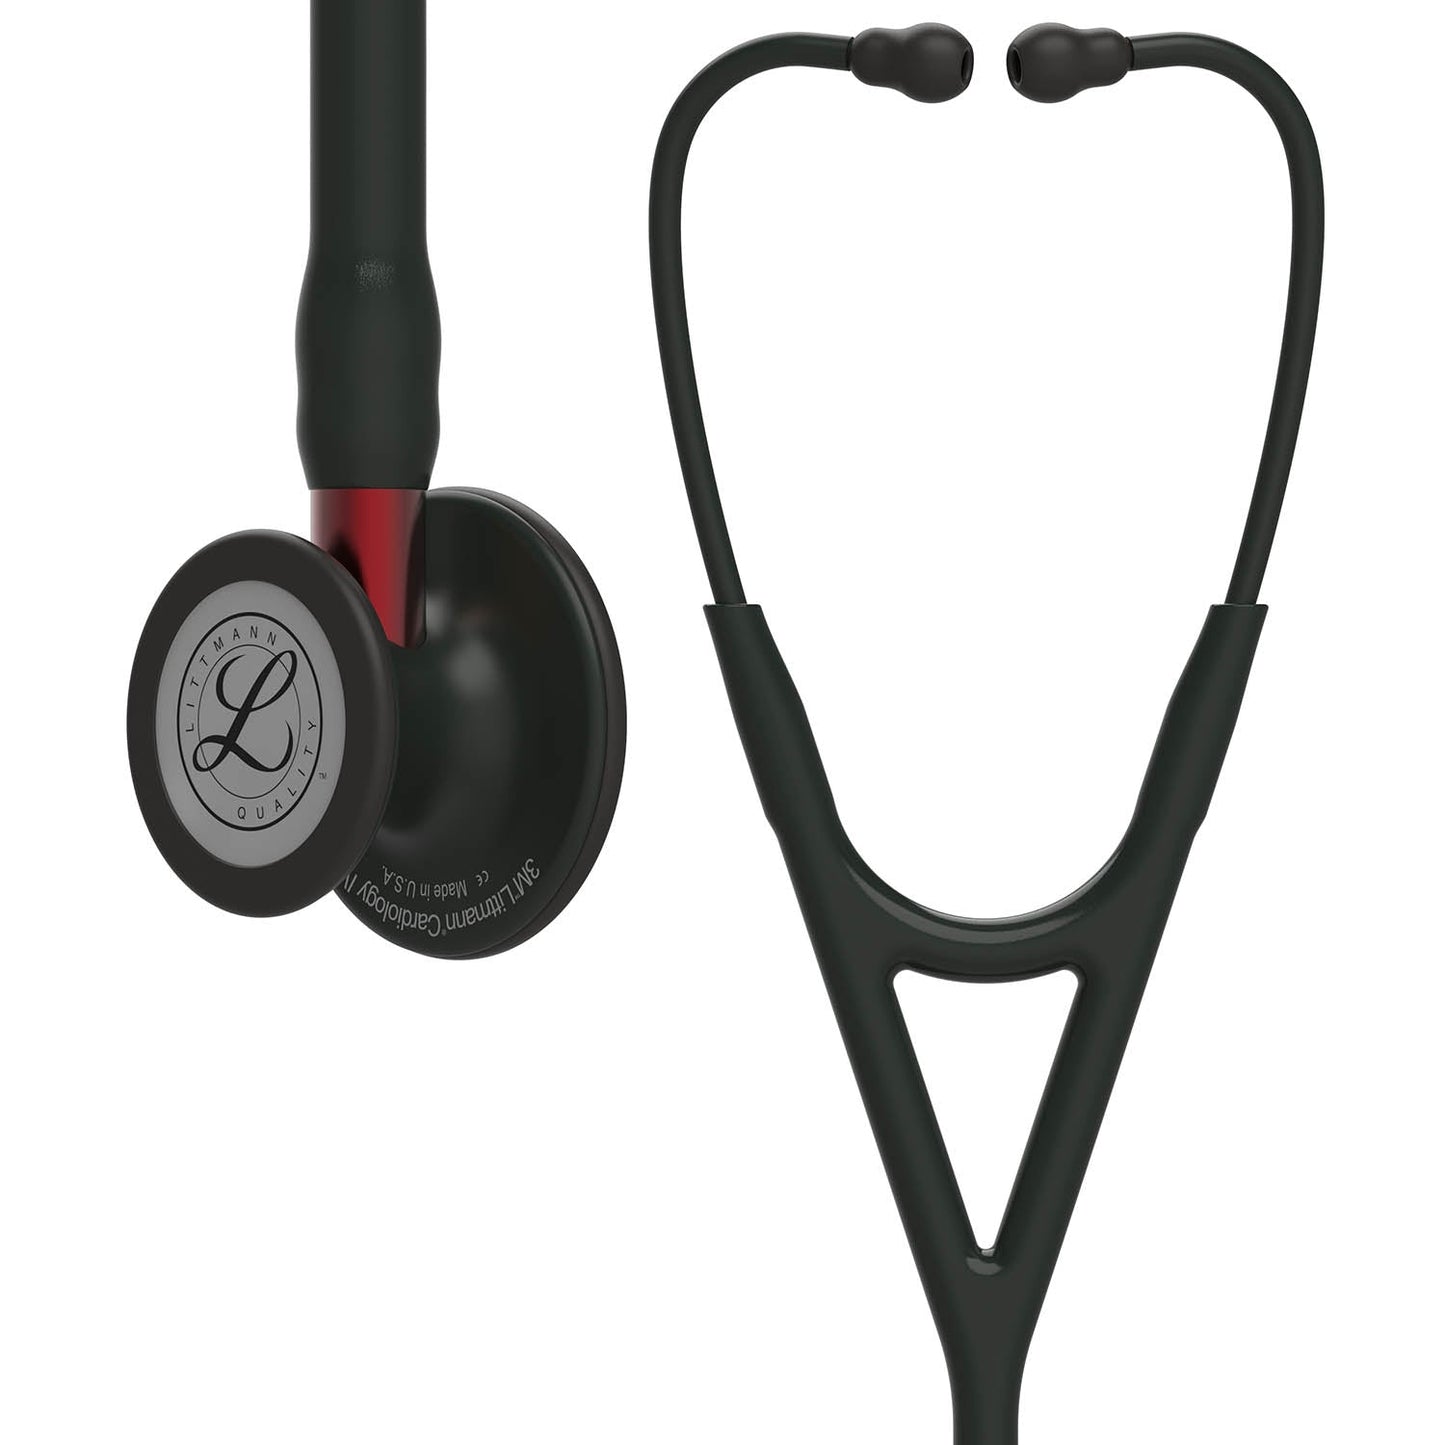 Littmann Cardiology IV Diagnostic Stethoscope: Black & Black - Red Stem 6200 - Over Engraved Stethoscopes 3M Littmann   